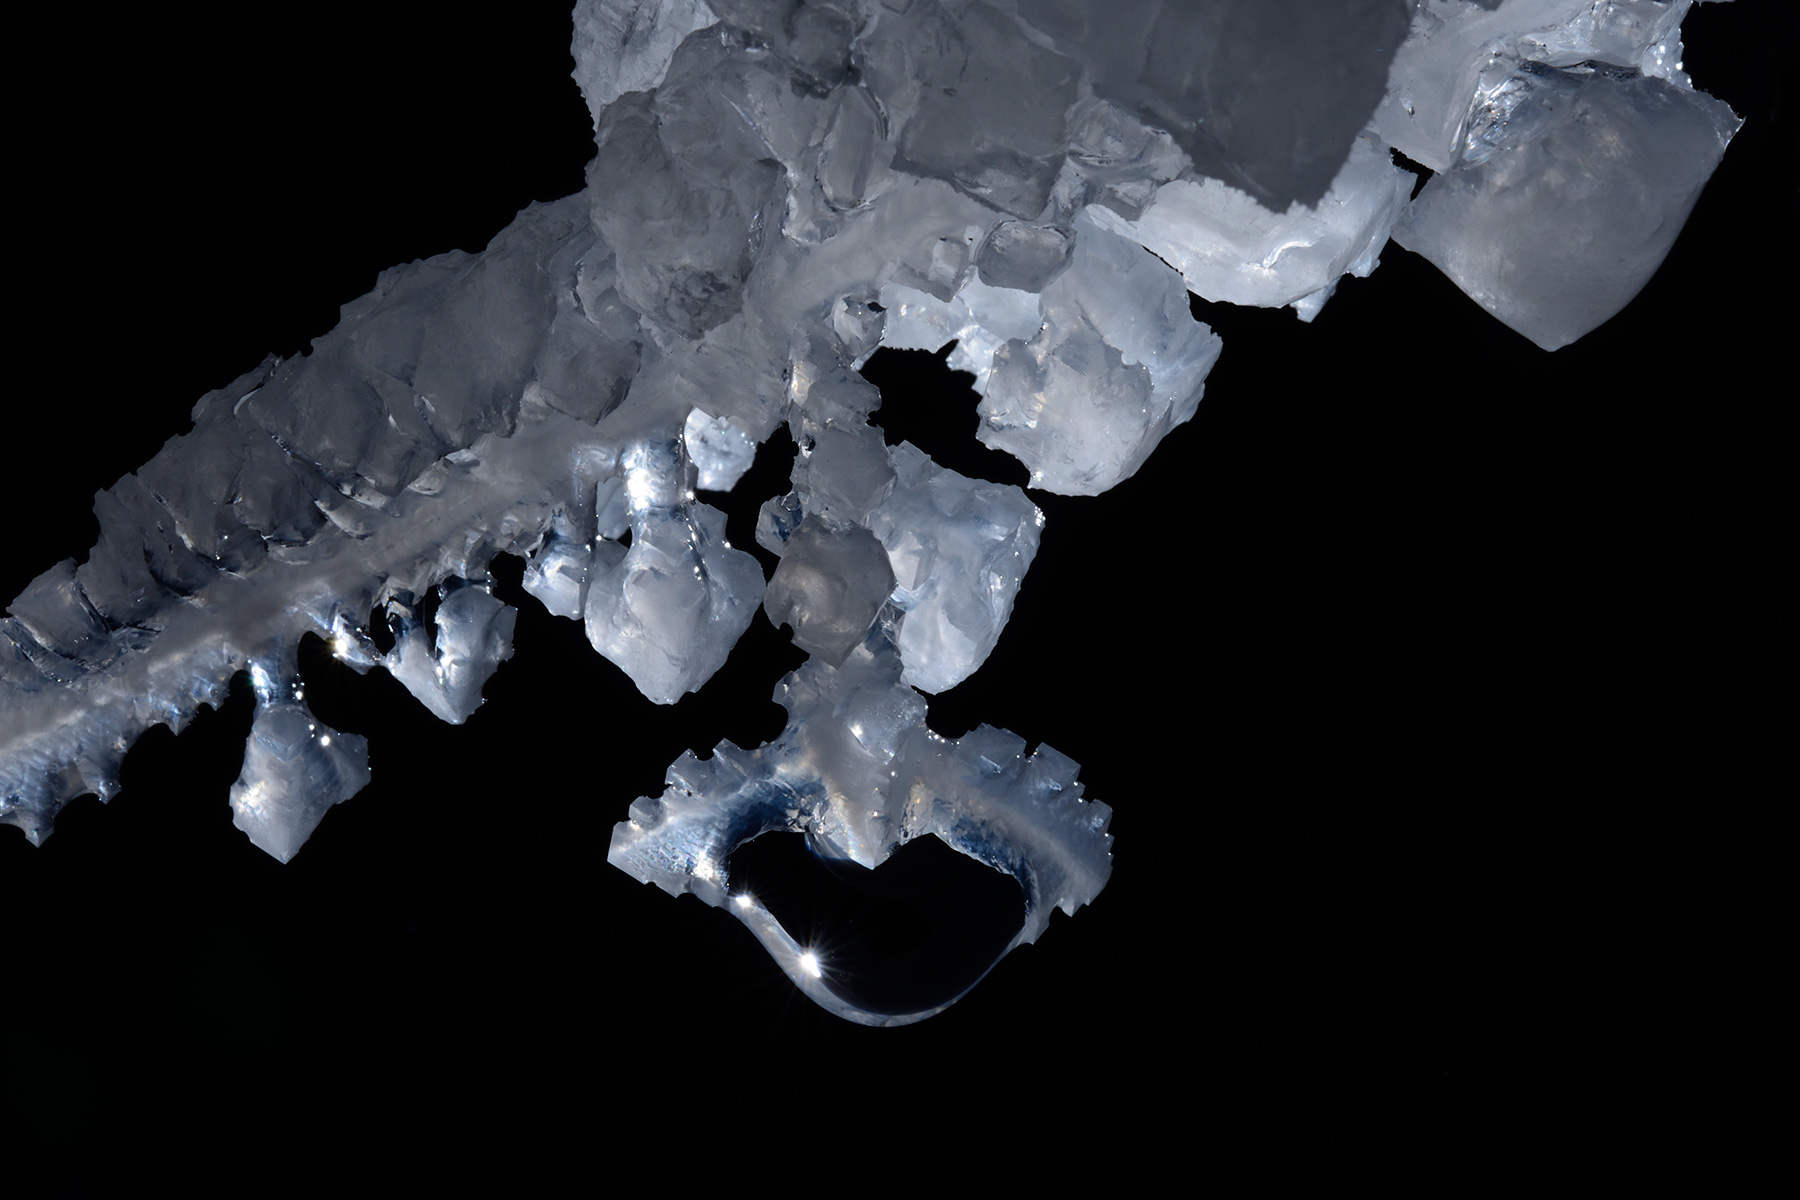 3N Cave (Iran, île de Qeshm, diapir de sel de Namakdan) : détail d'une goutte avec cristaux de sel